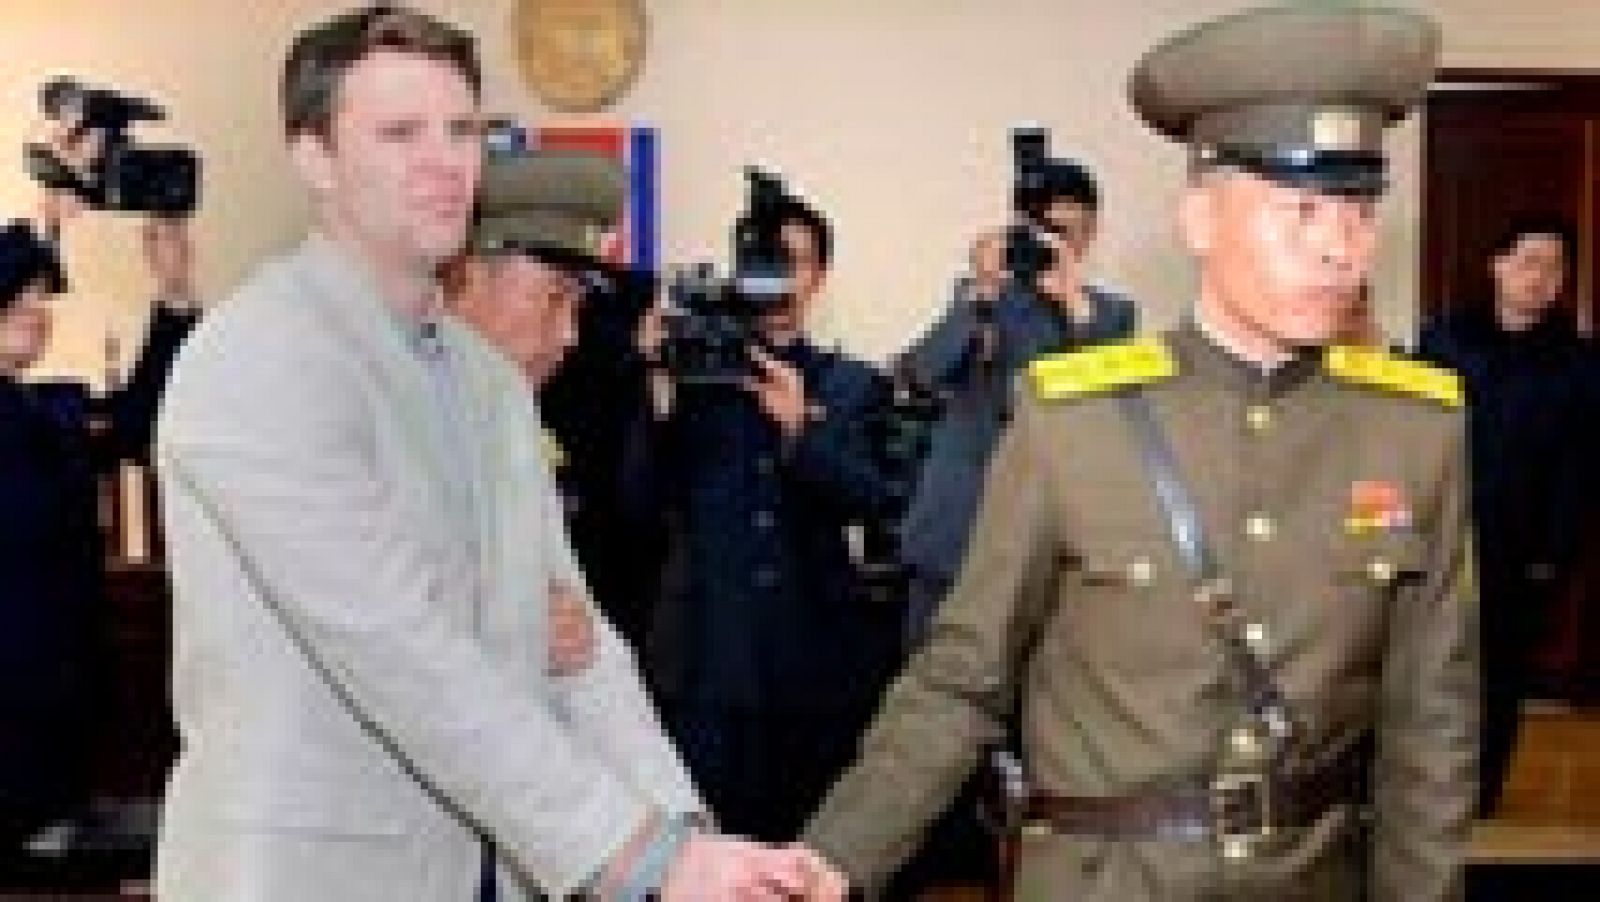 Muere el estudiante estadounidense que cayó en coma preso en Corea del Norte